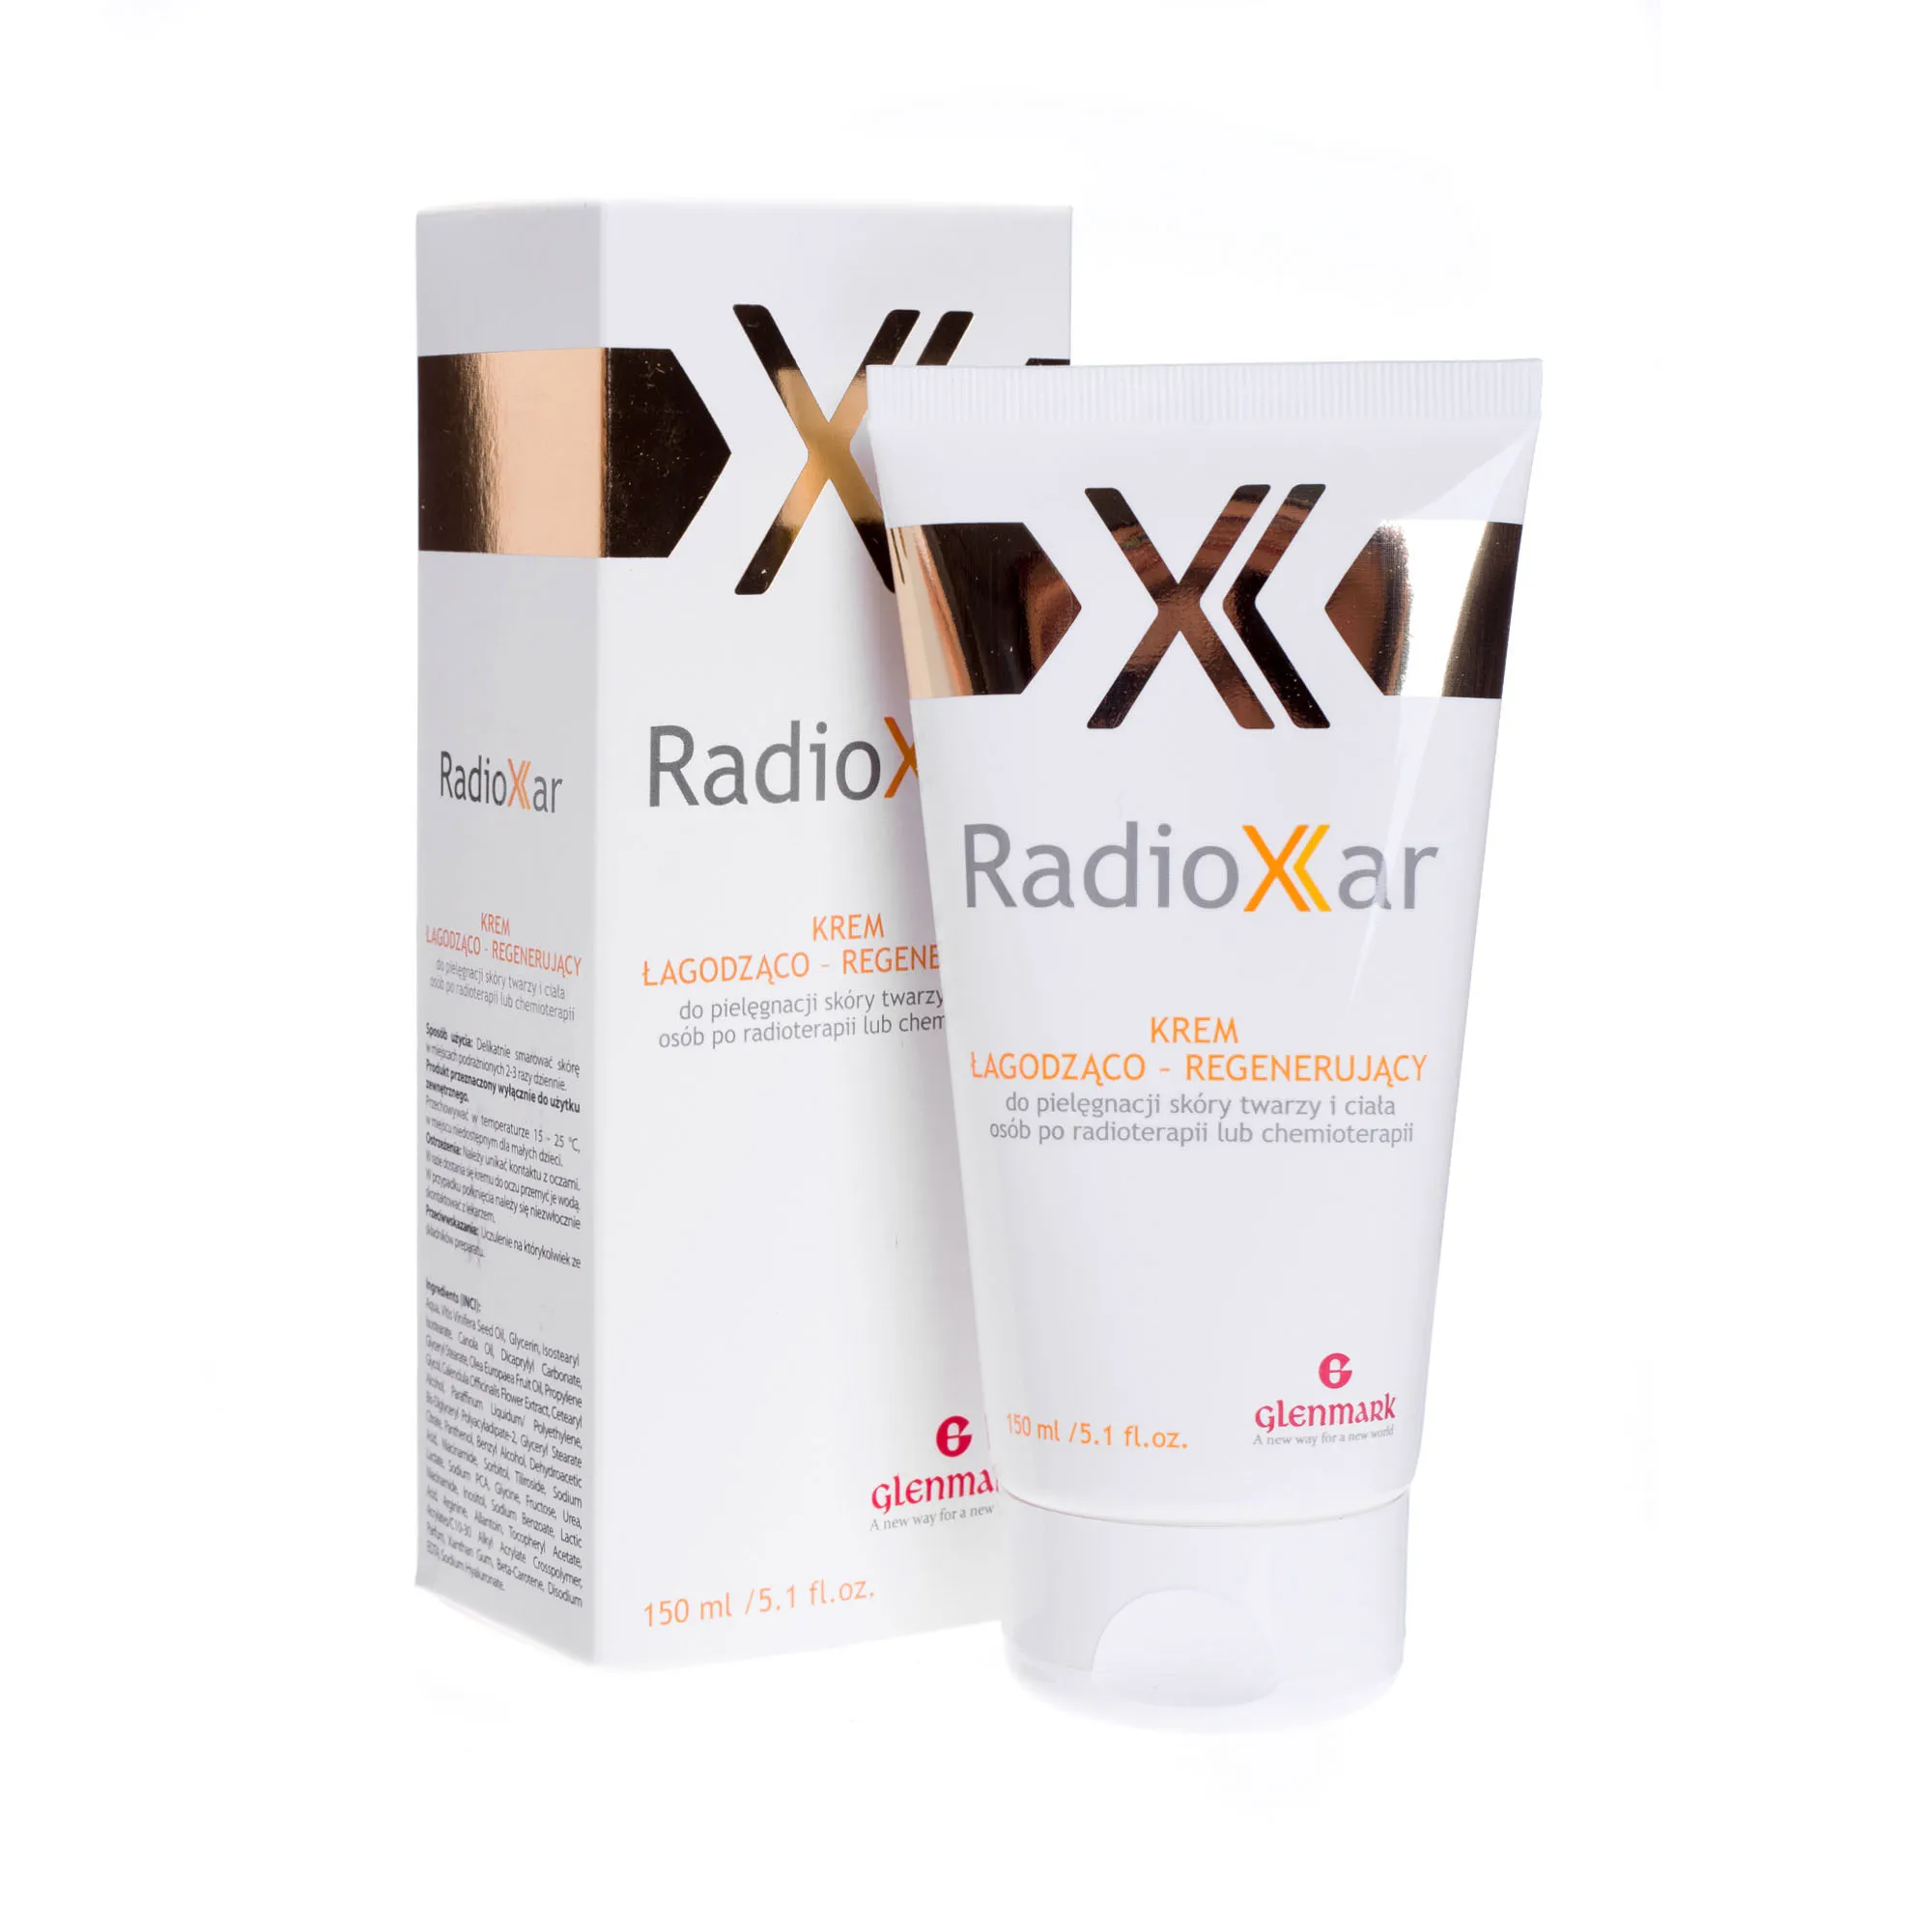 RadioXar, krem łagodząco-regenerujący na skórę po radio- i chemioterapii, 150 ml